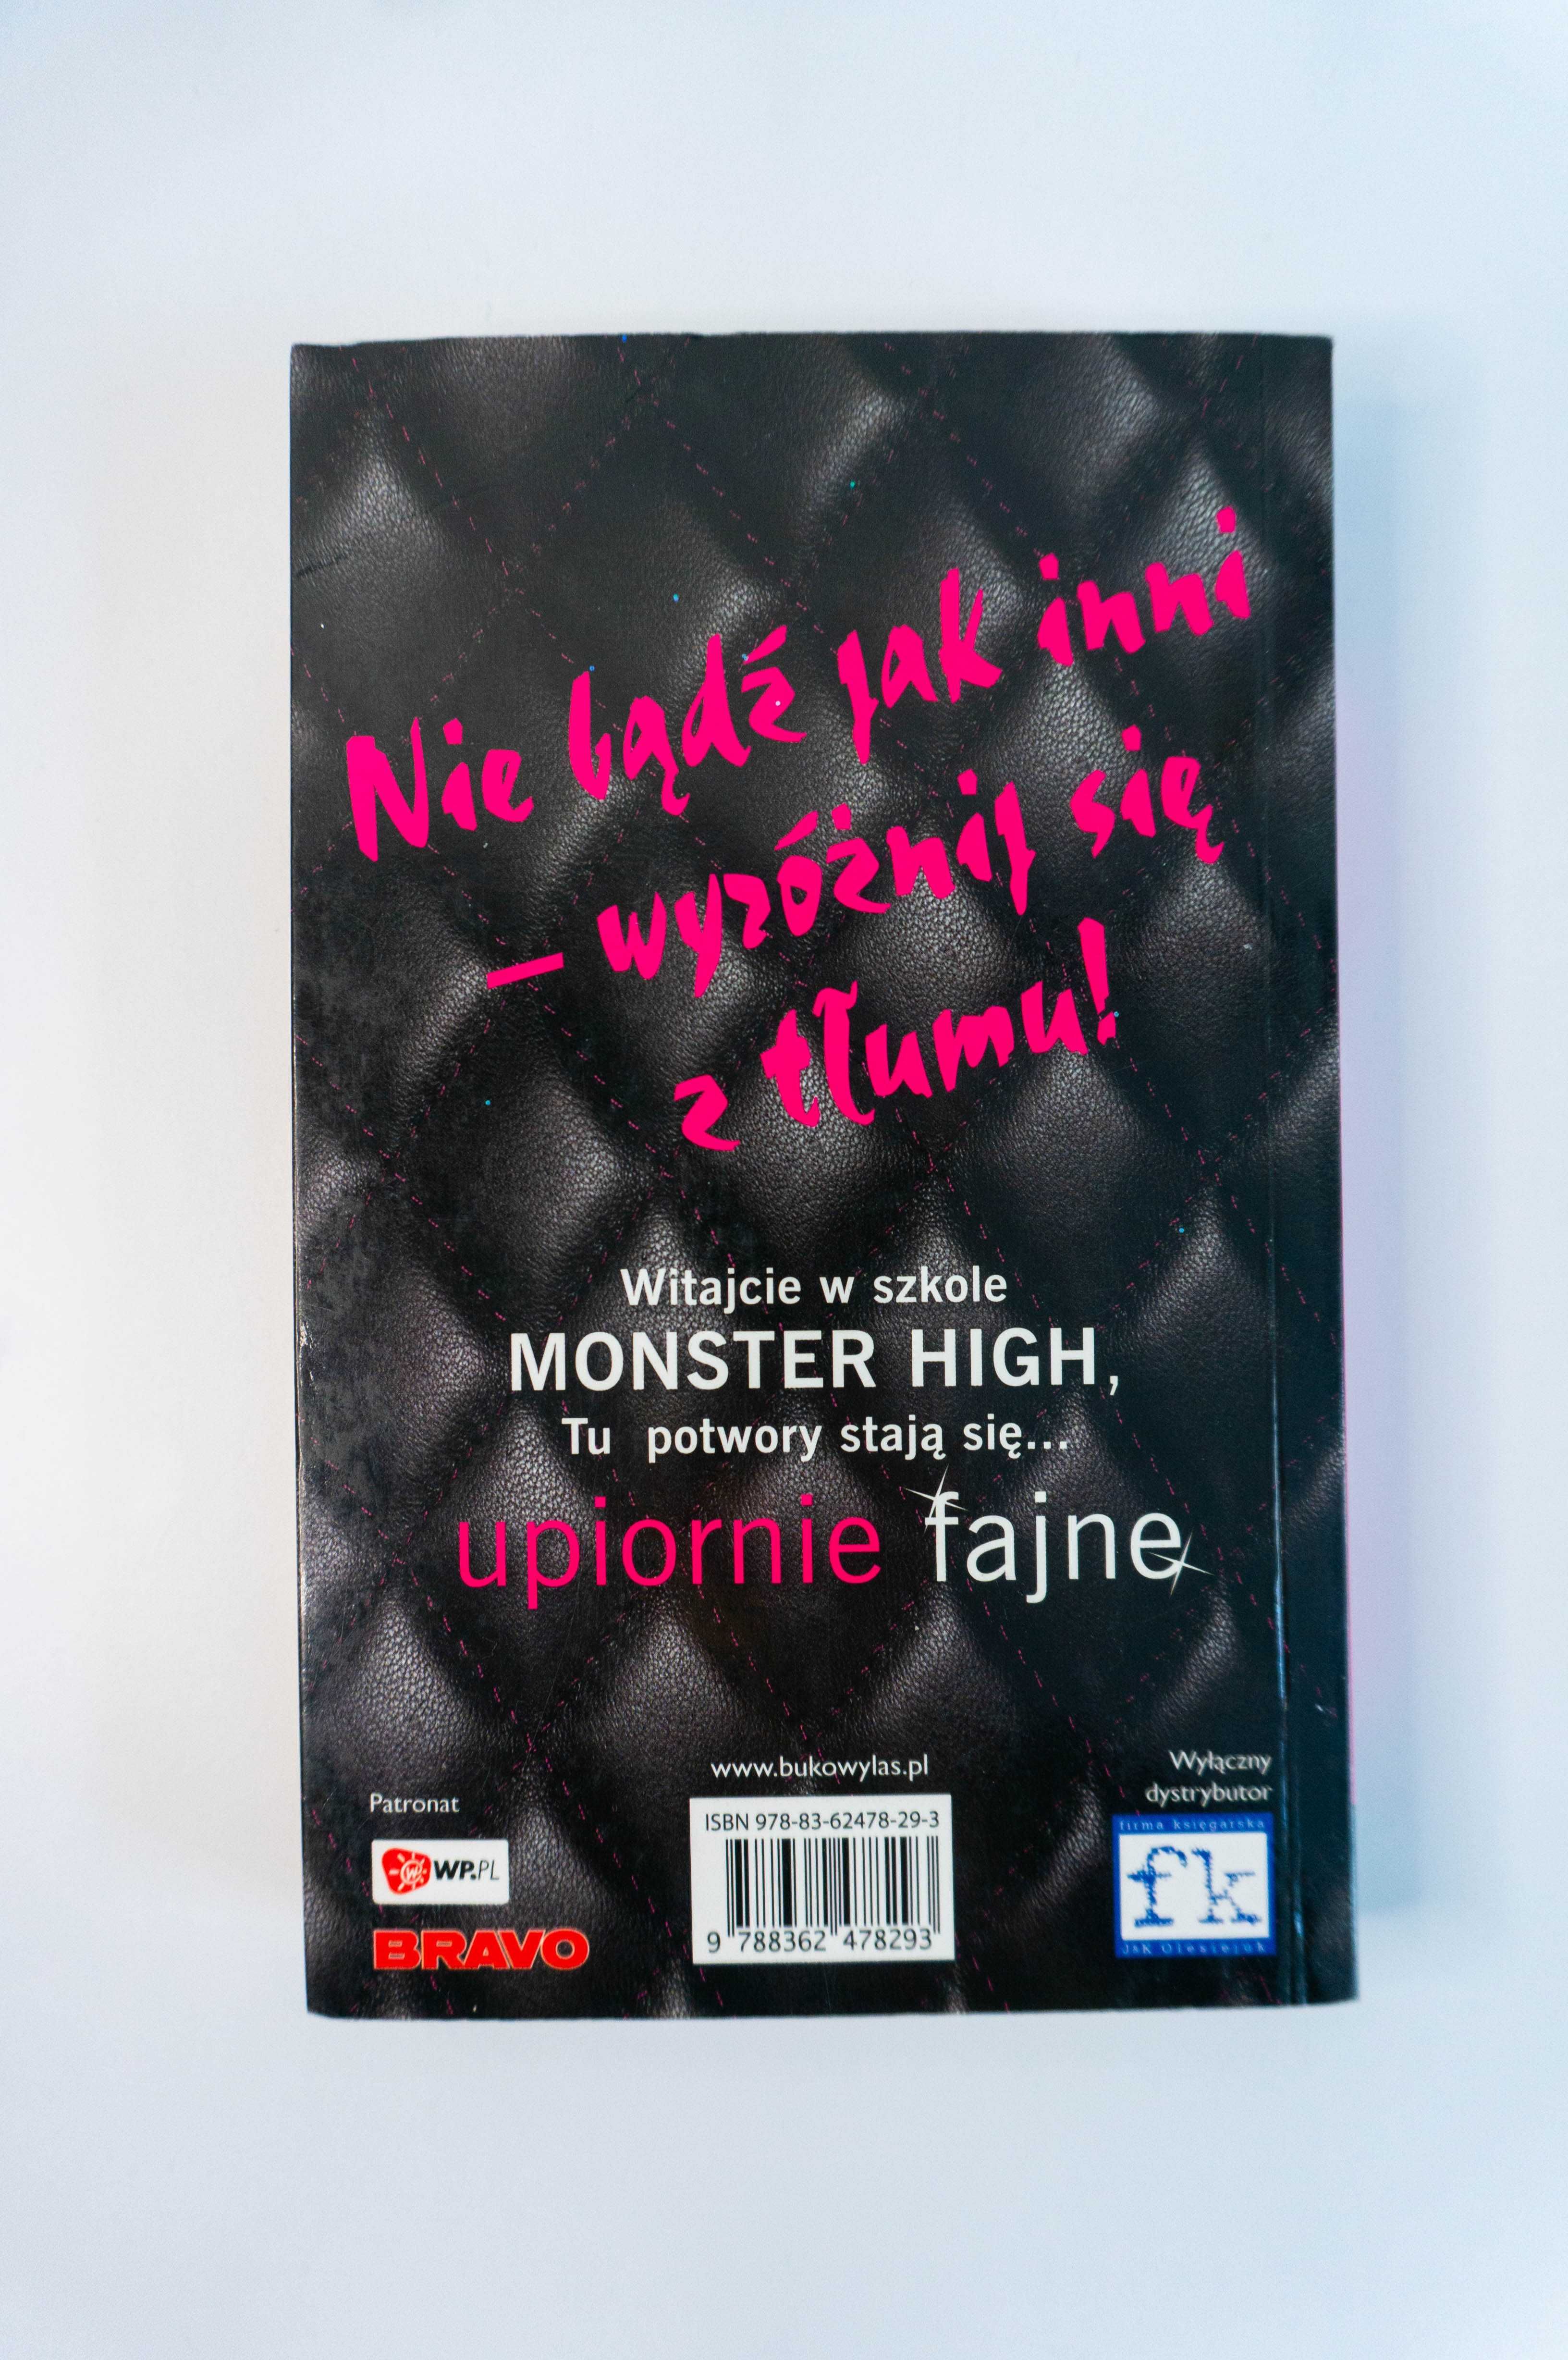 Monster high książka tom 1 upiorna szkoła